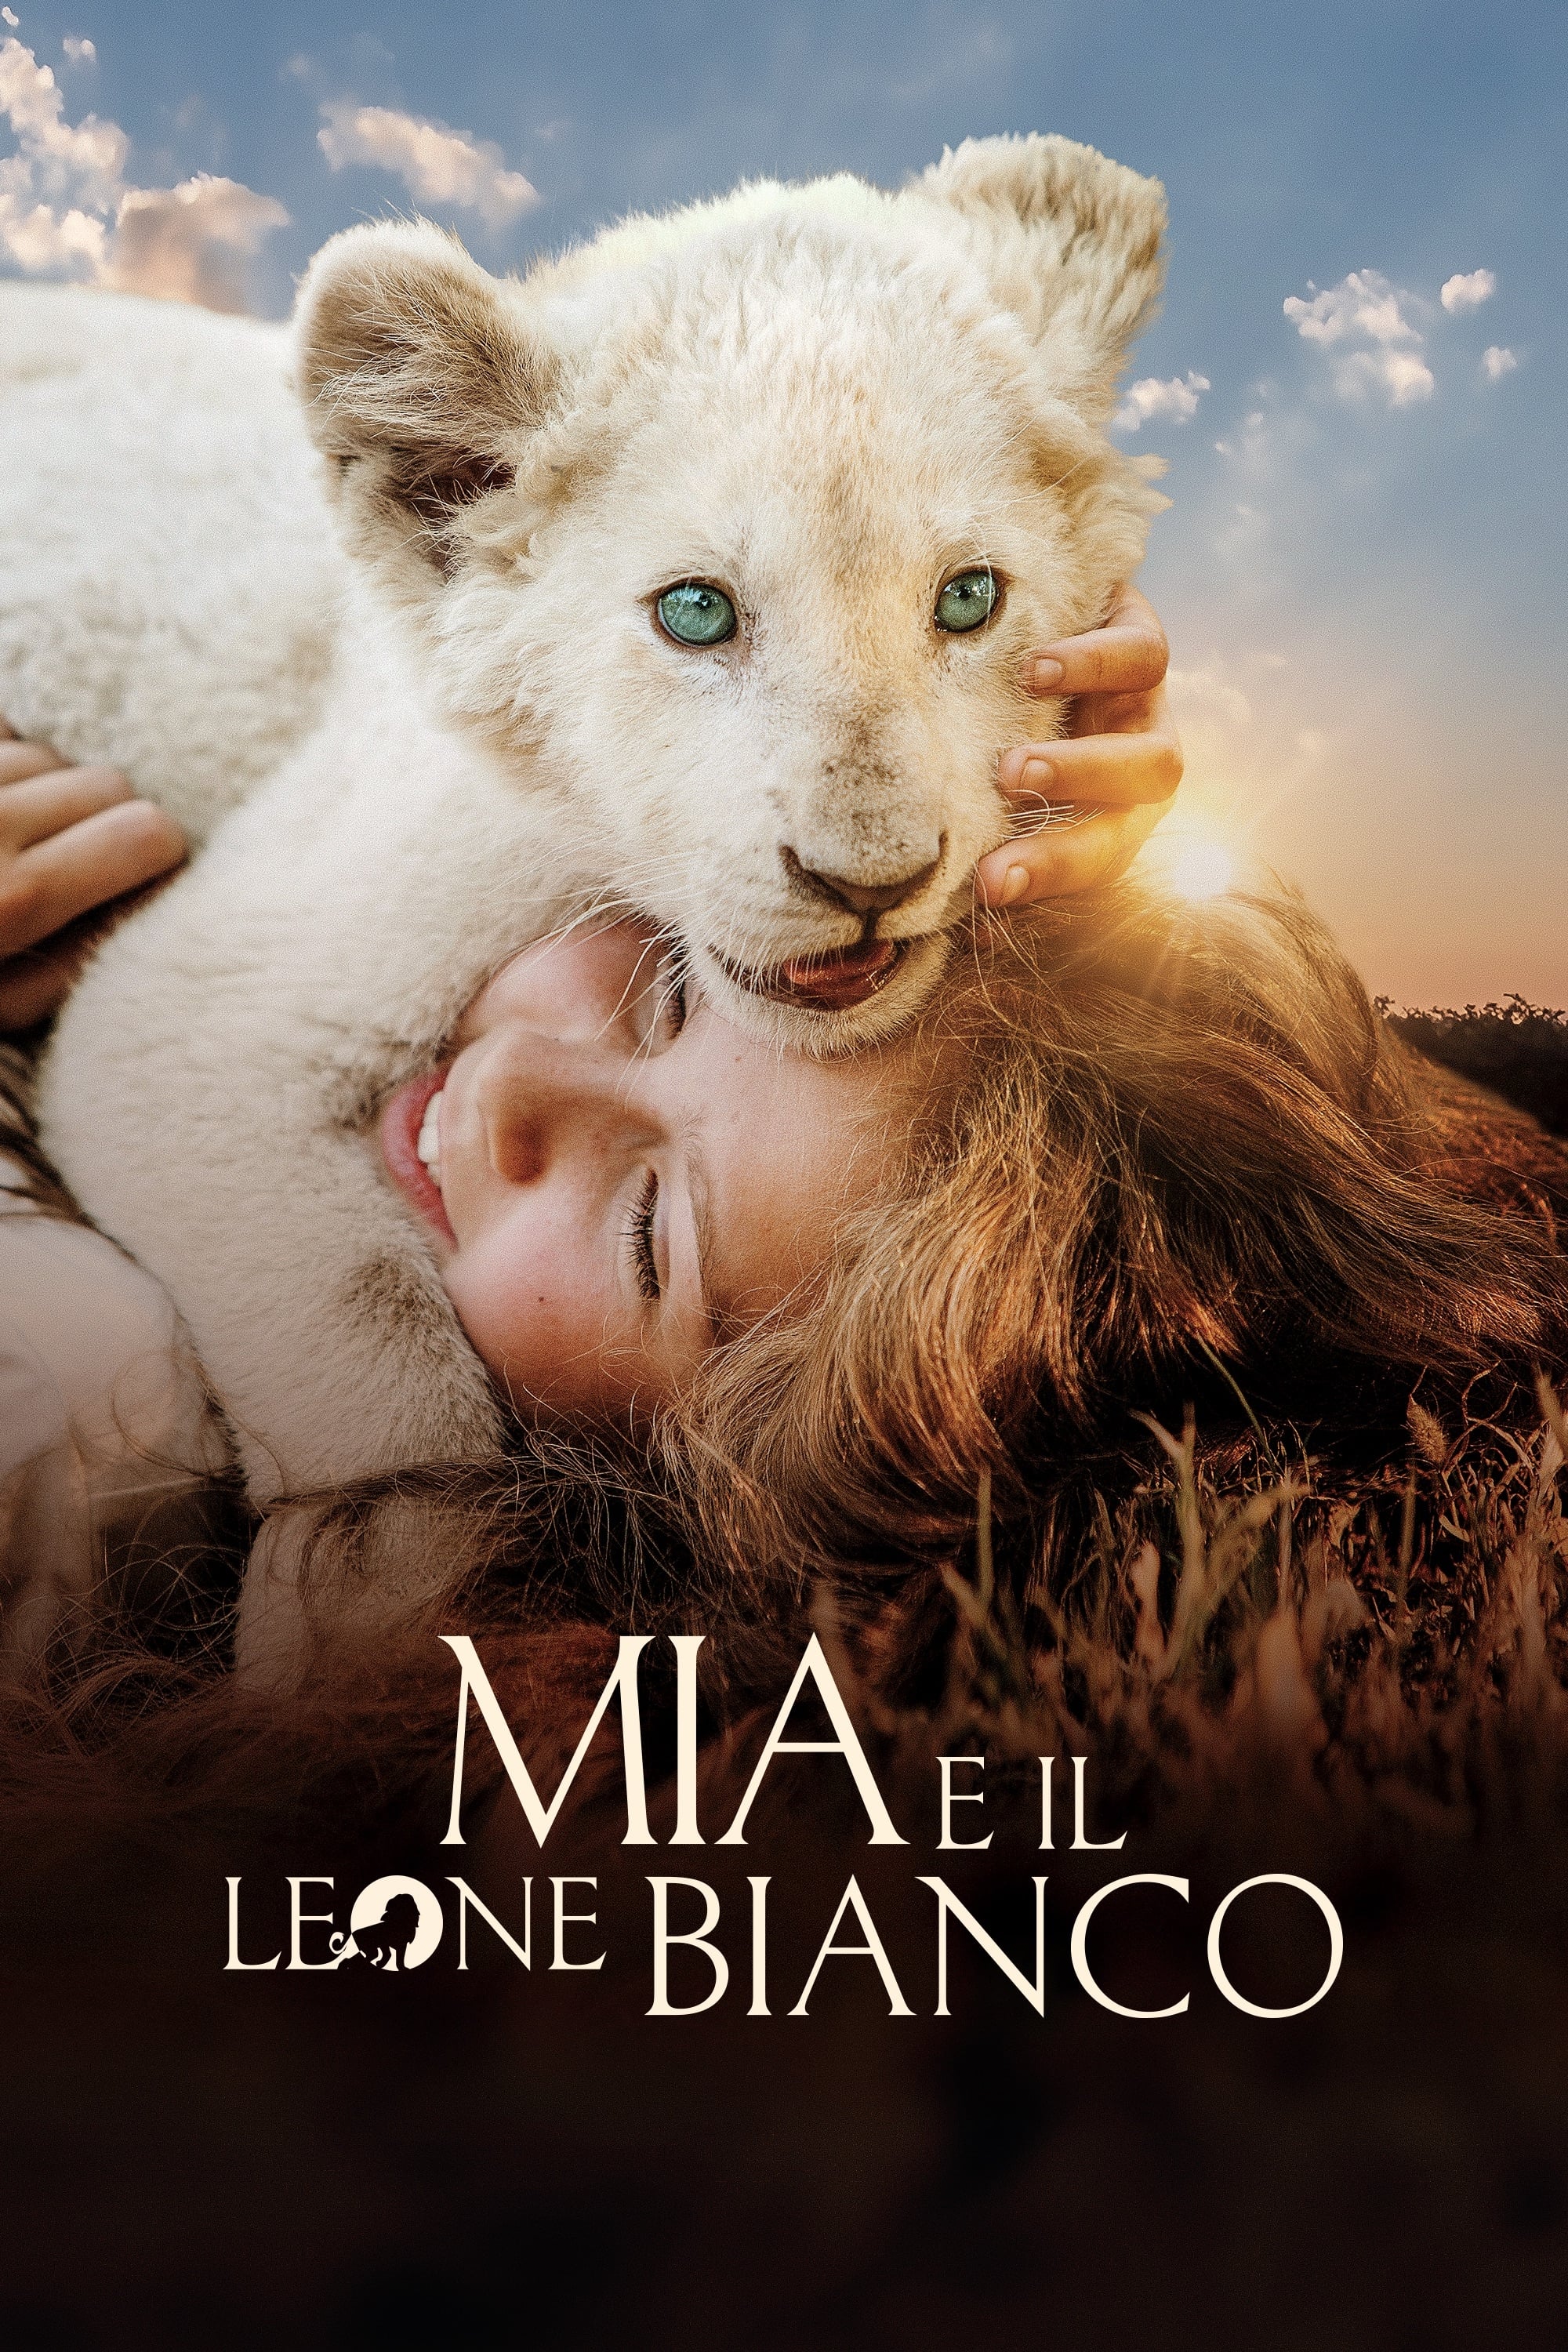 Mia e il leone bianco film